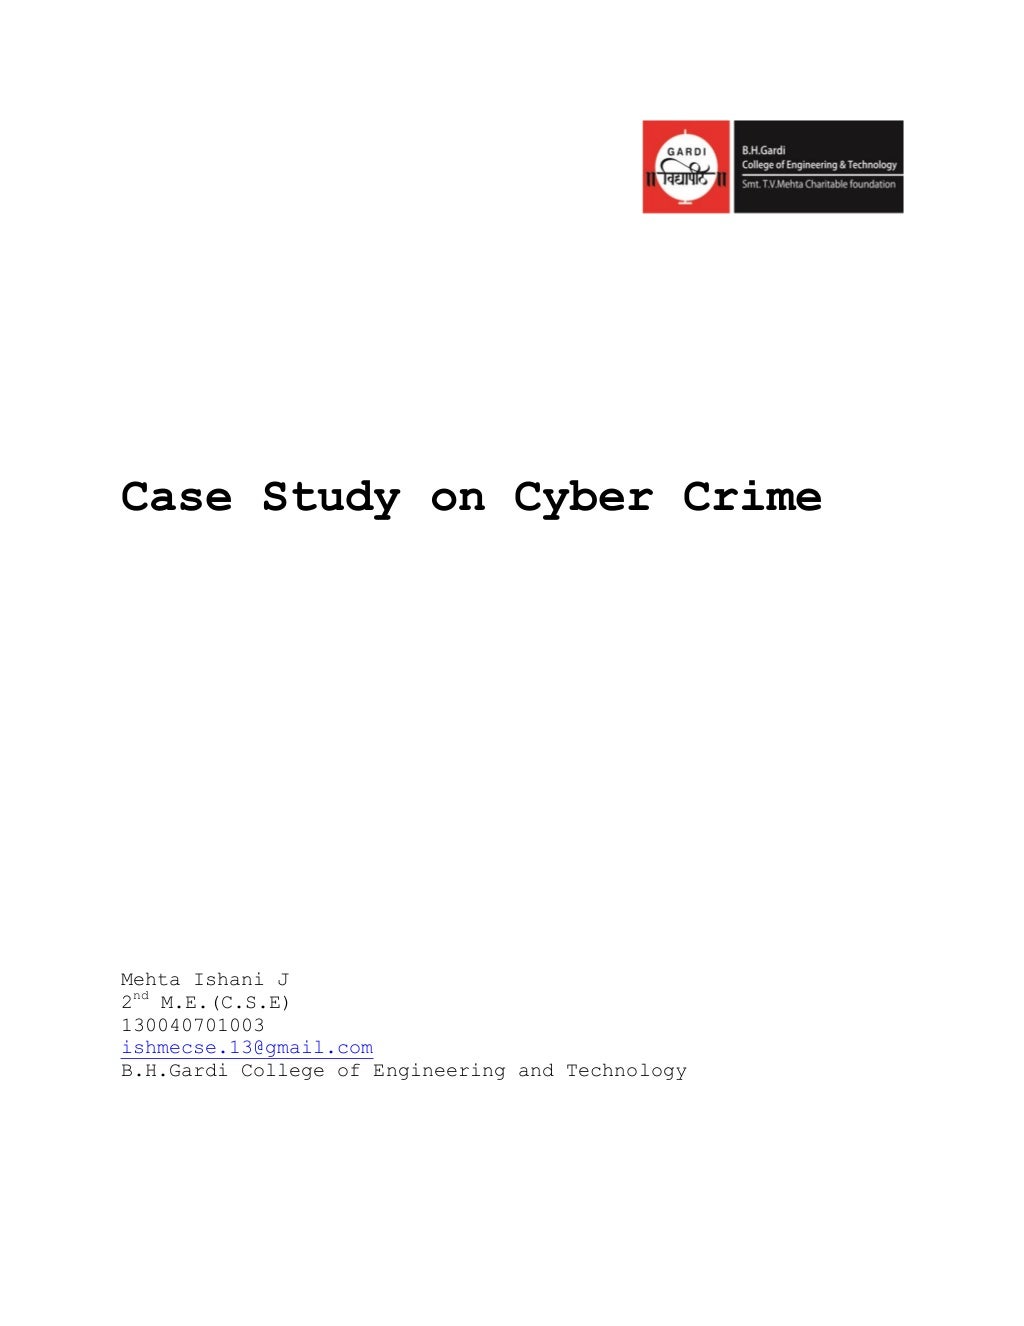 crime case study uk